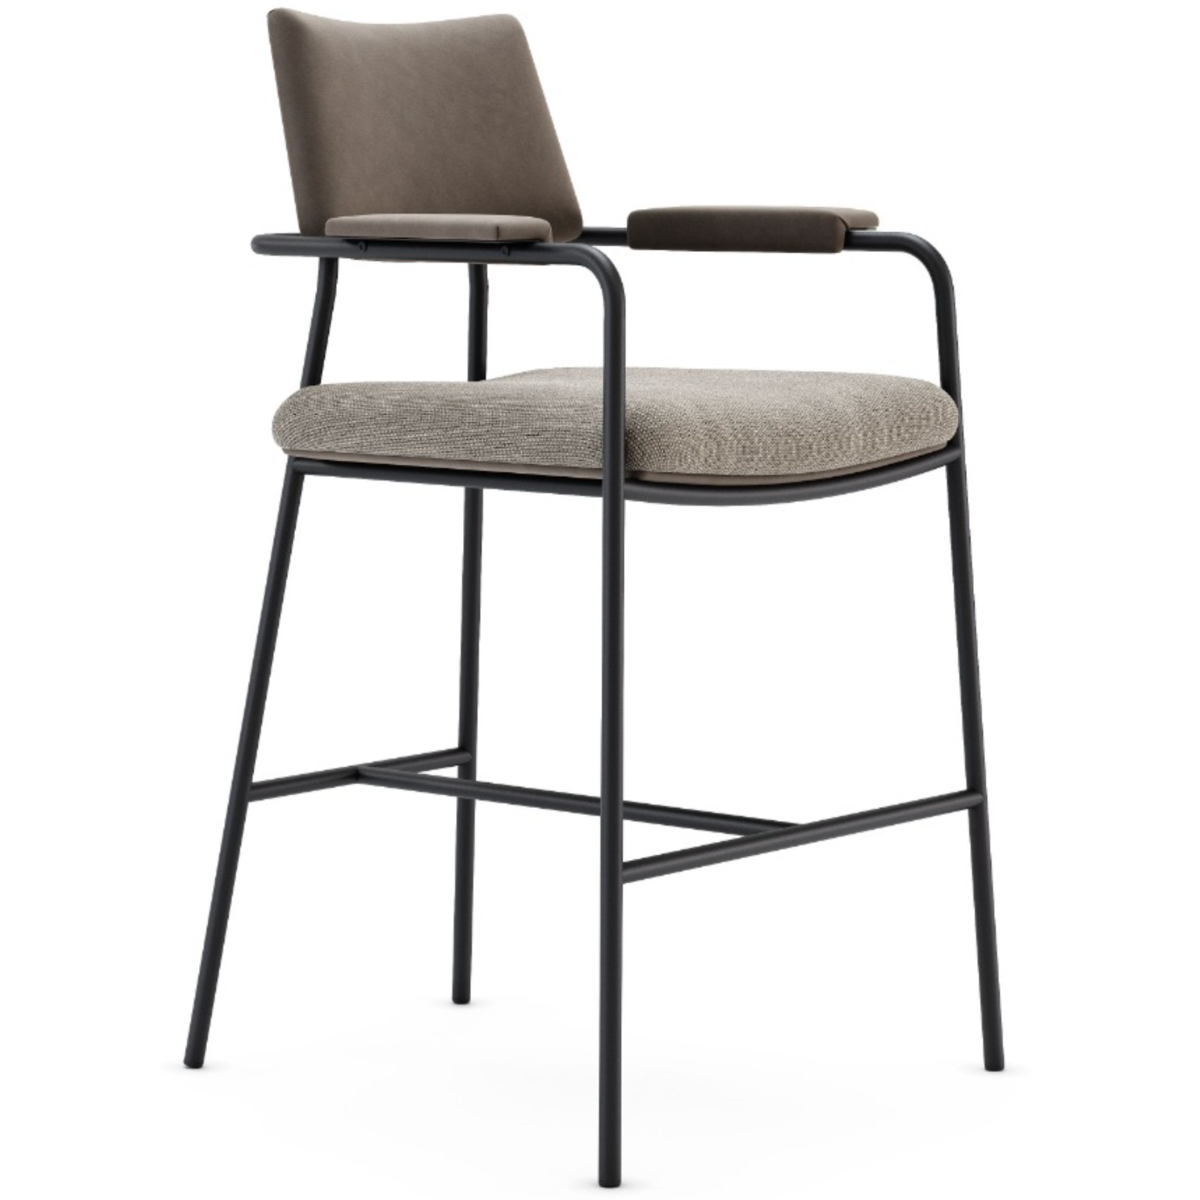 Domkapa Stranger Counter Chair - Customisable | Modern Furniture + Decor